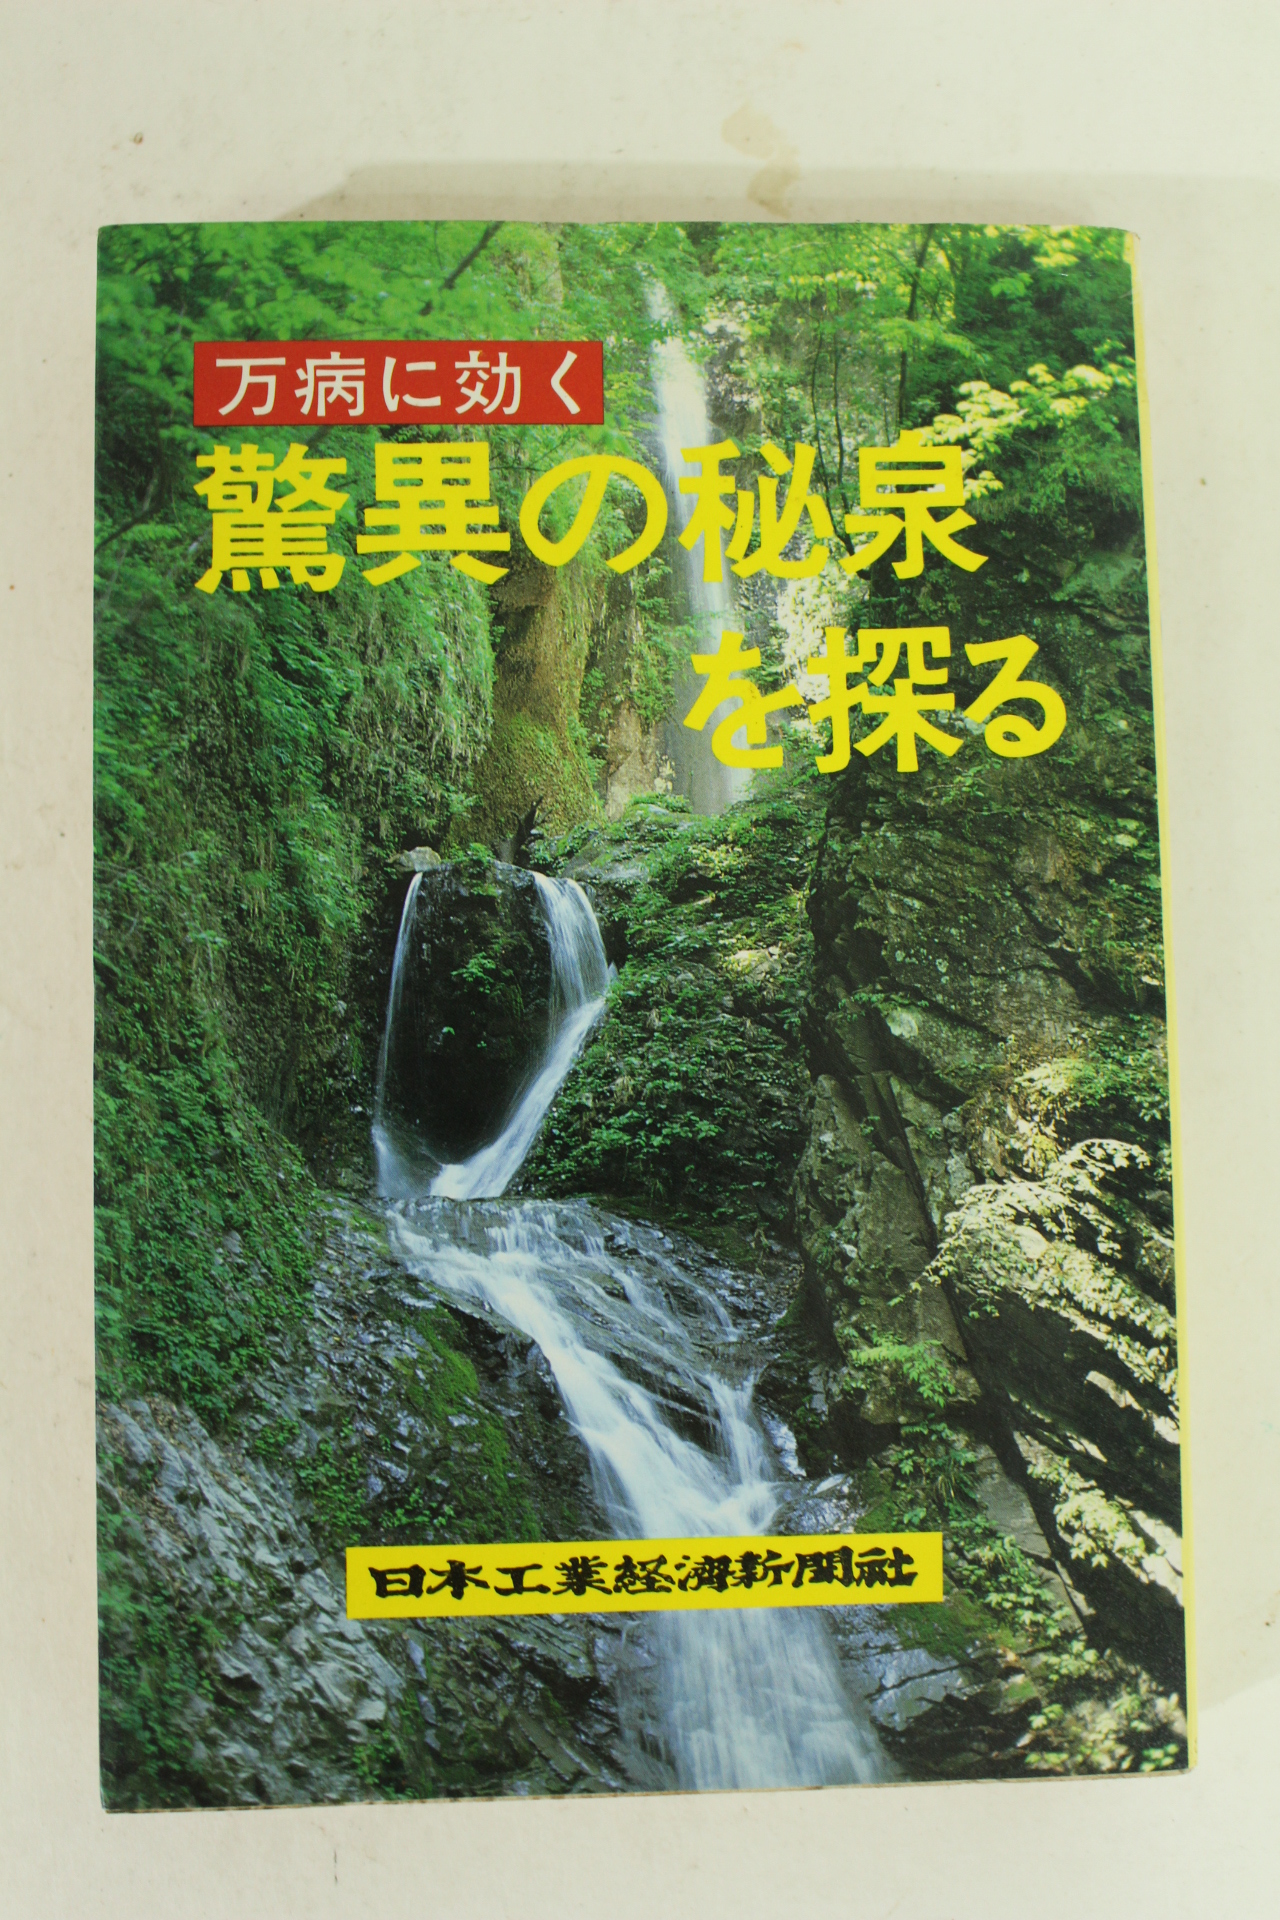 1983년 일본온천관련 도서